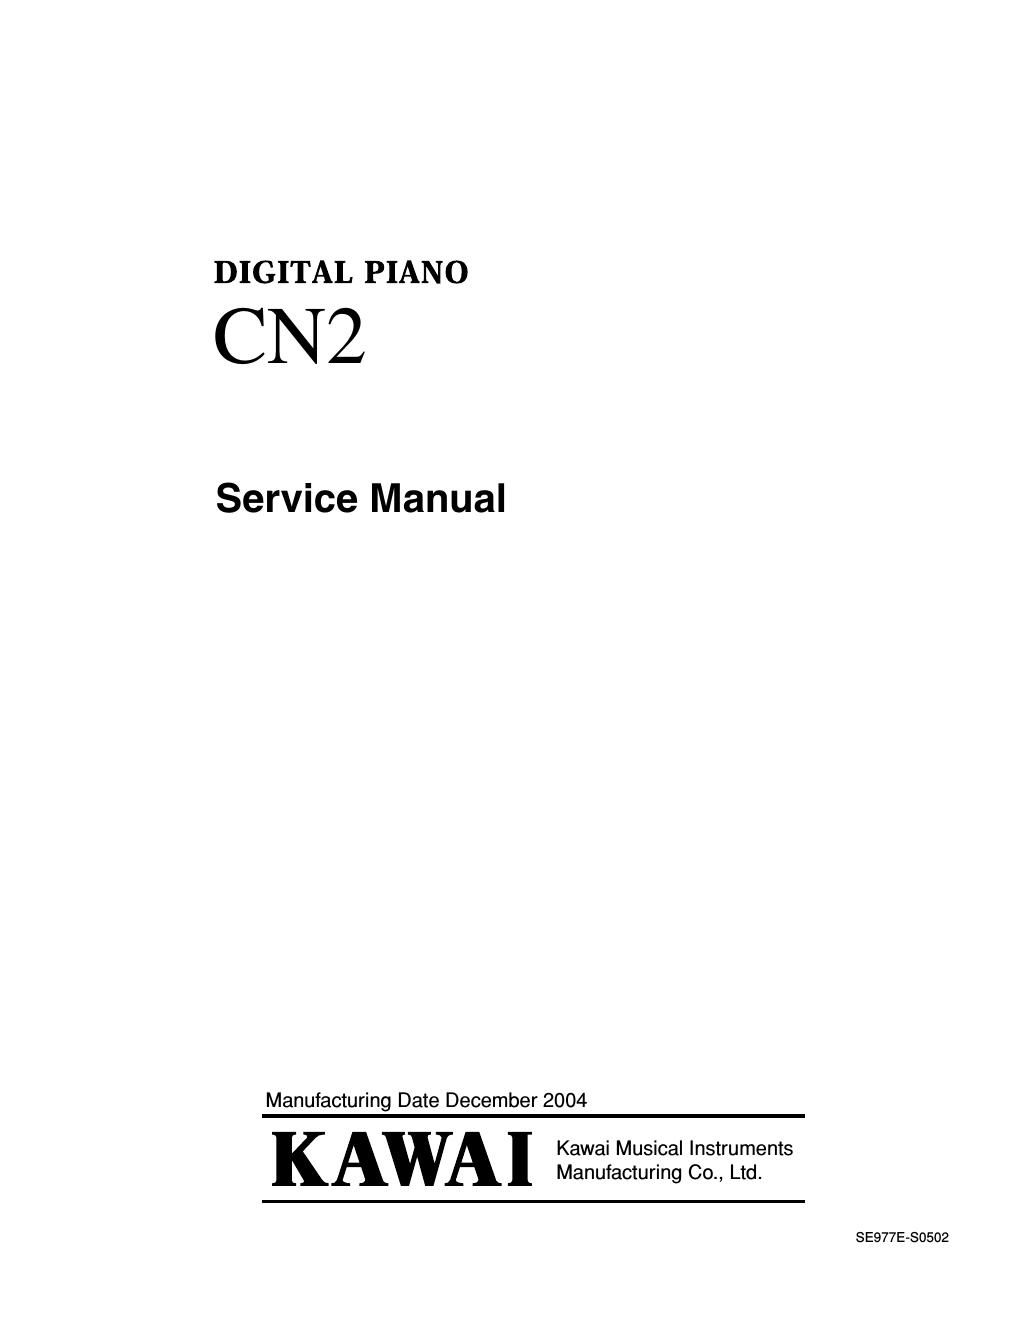 kawai cn2 service manual